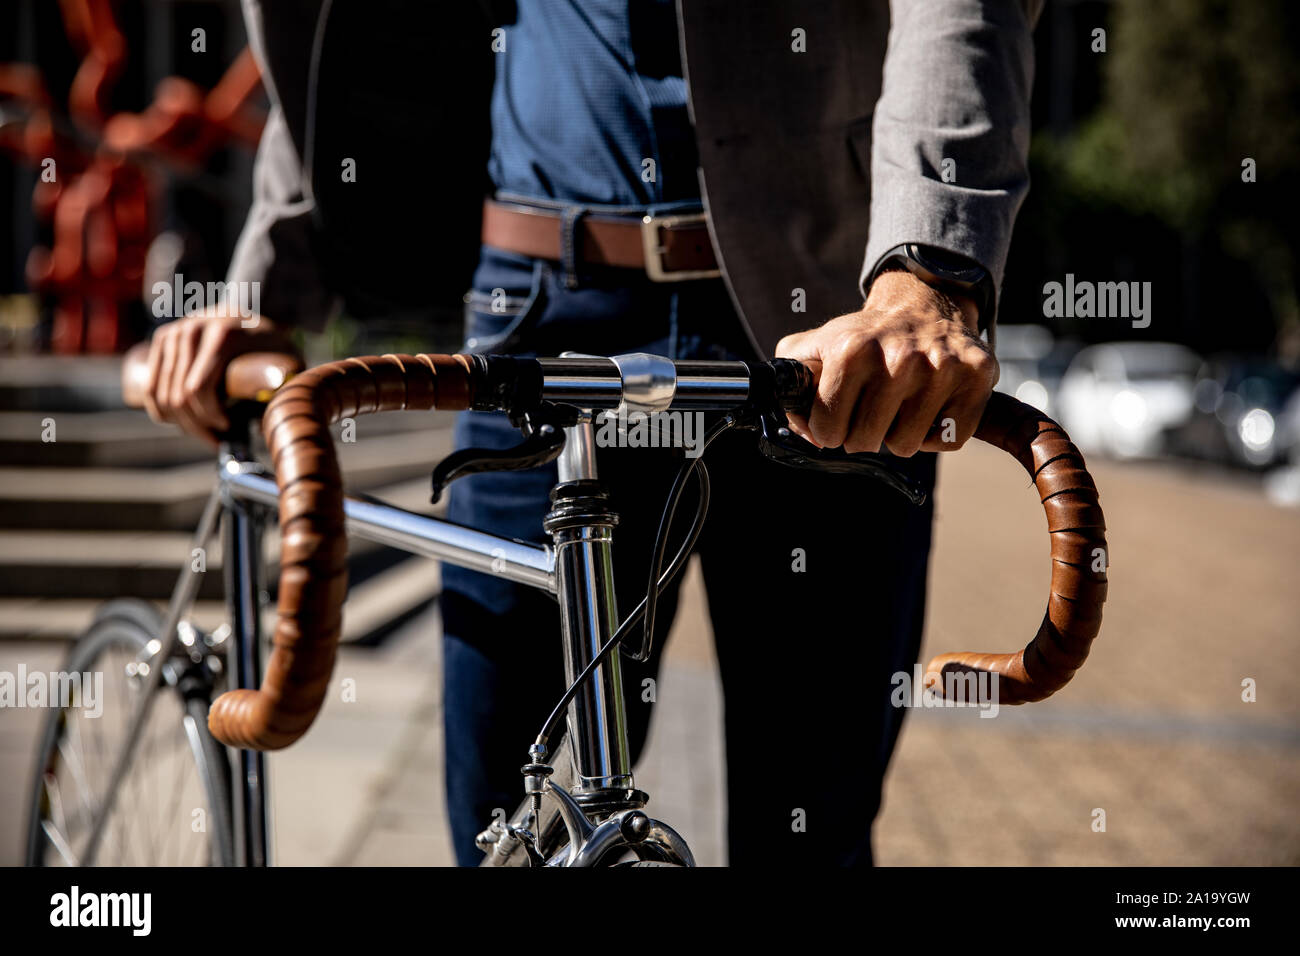 Jeune homme professionnel wheeling un vélo Banque D'Images